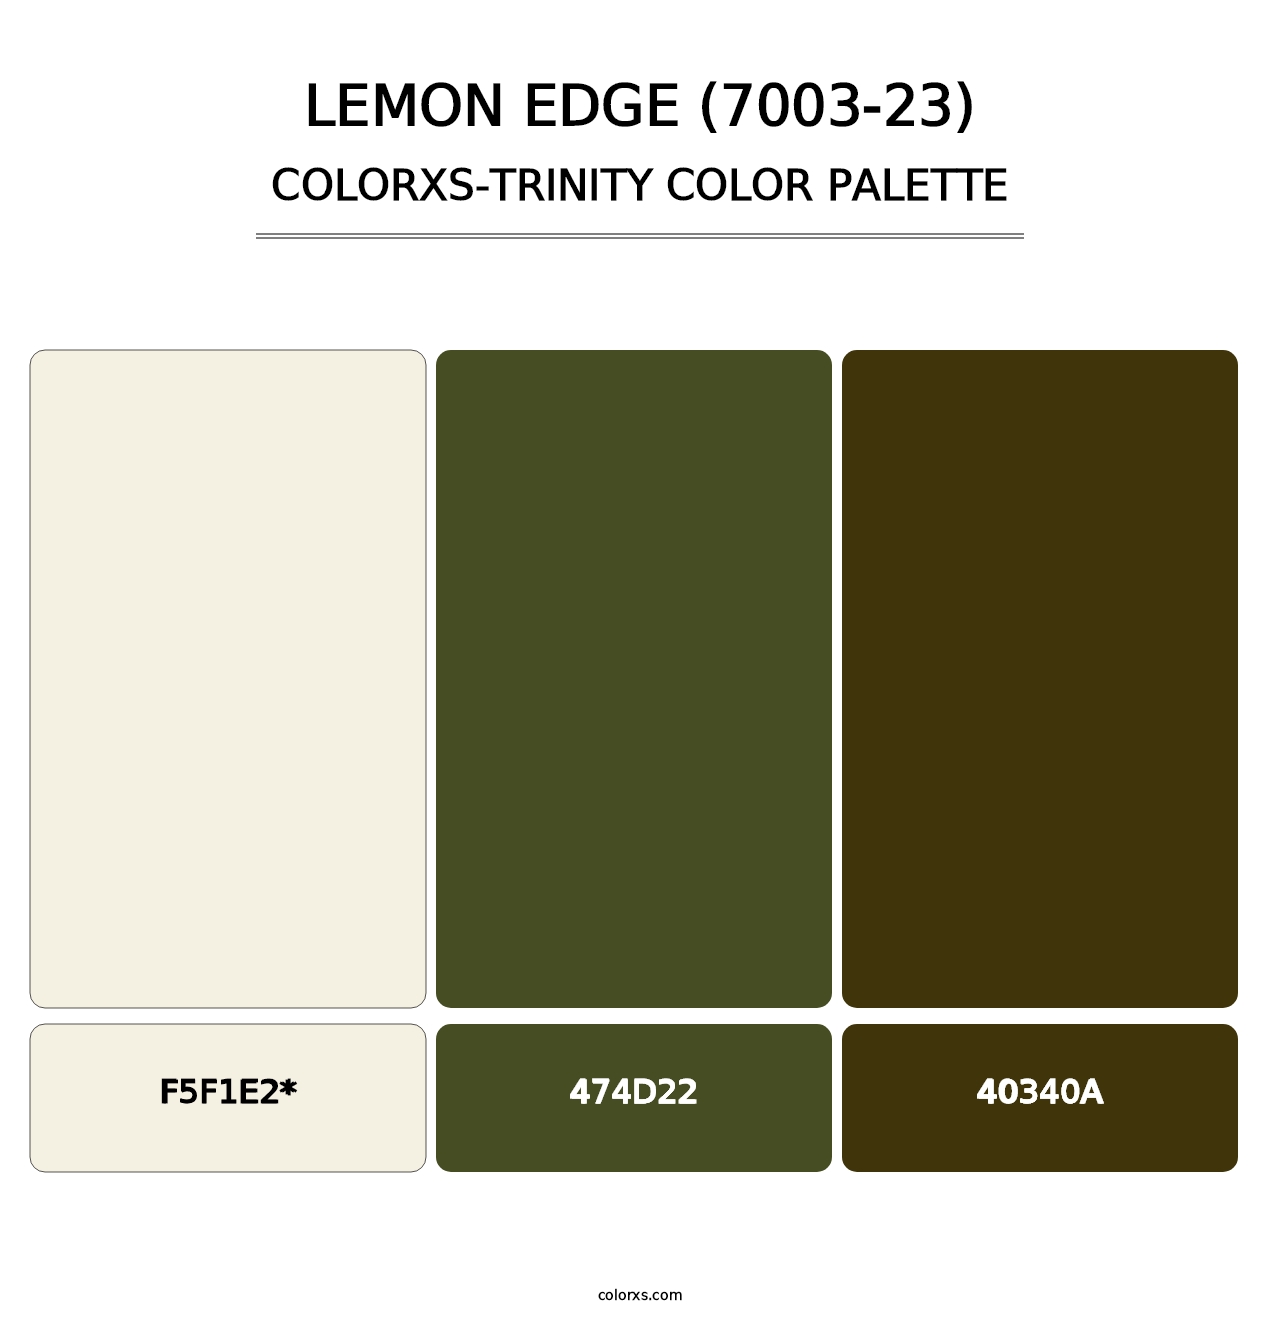 Lemon Edge (7003-23) - Colorxs Trinity Palette